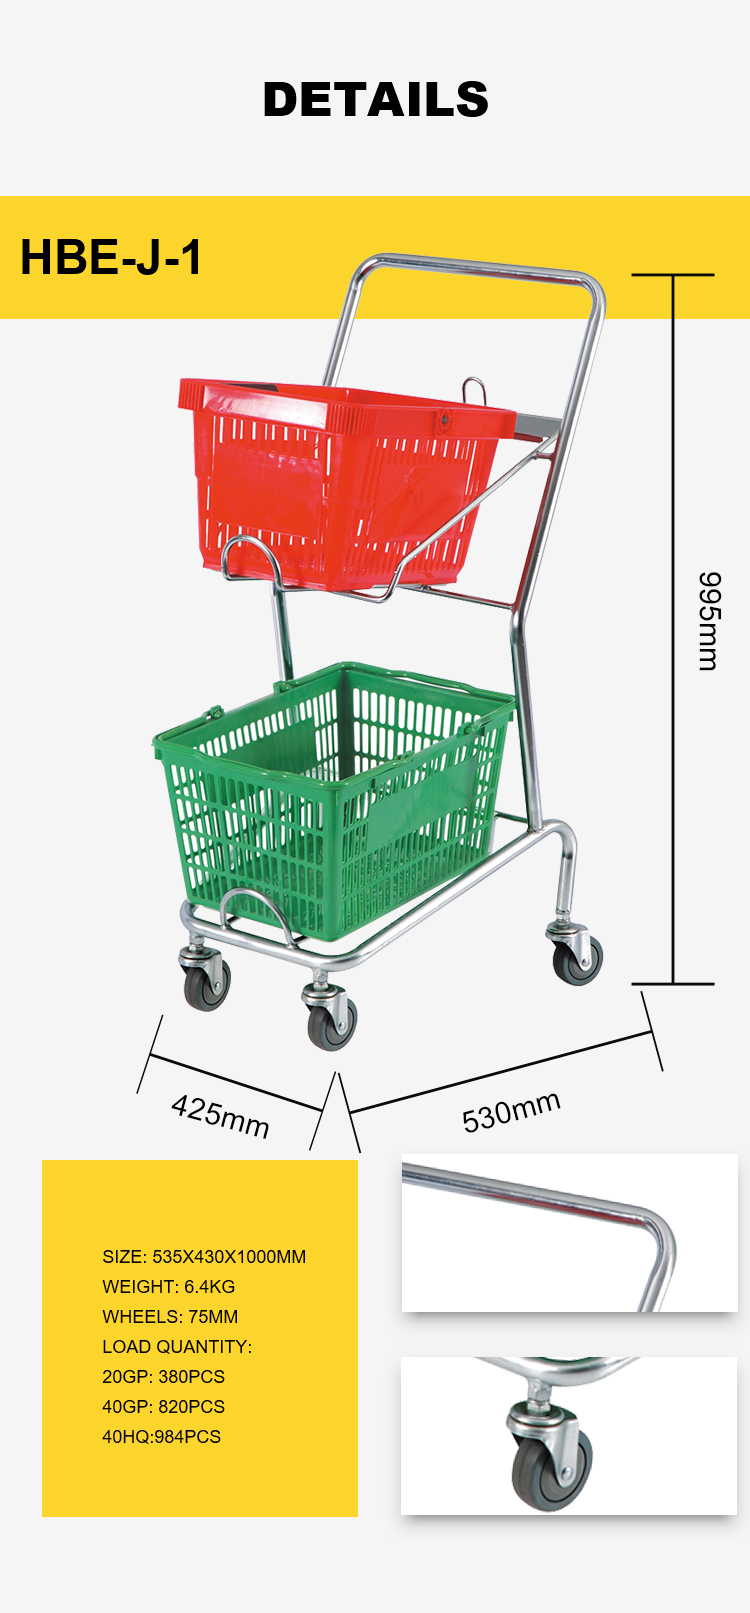 Double Basket Plastic Shopping Cart for Hyper Market